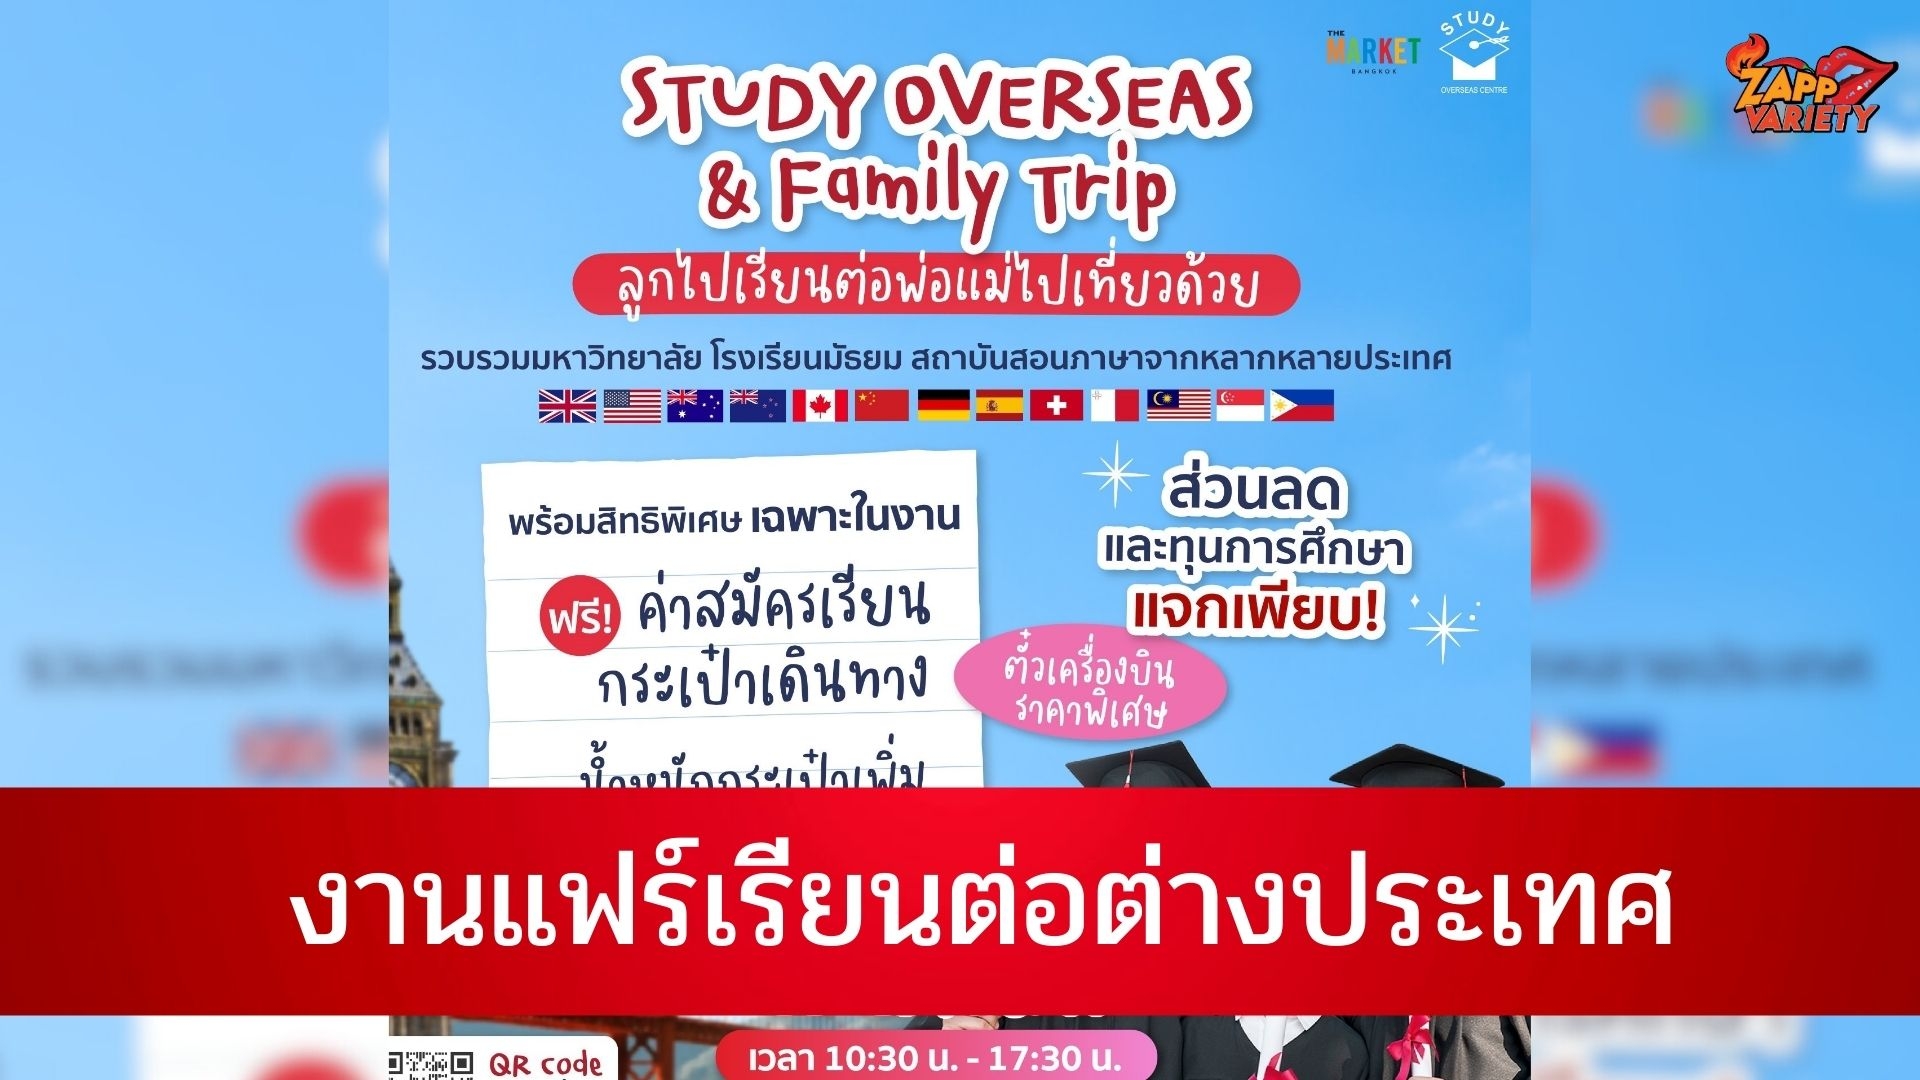 งาน “Study Overseas & Family Trip ลูกไปเรียนต่อ พ่อแม่ไปเที่ยวด้วย”งานแฟร์เรียนต่อต่างประเทศครั้งใหญ่ แจกทุนการศึกษามากกว่า 500 ทุนพร้อมสิทธิพิเศษมากมาย 22 - 23 เม.ย. นี้